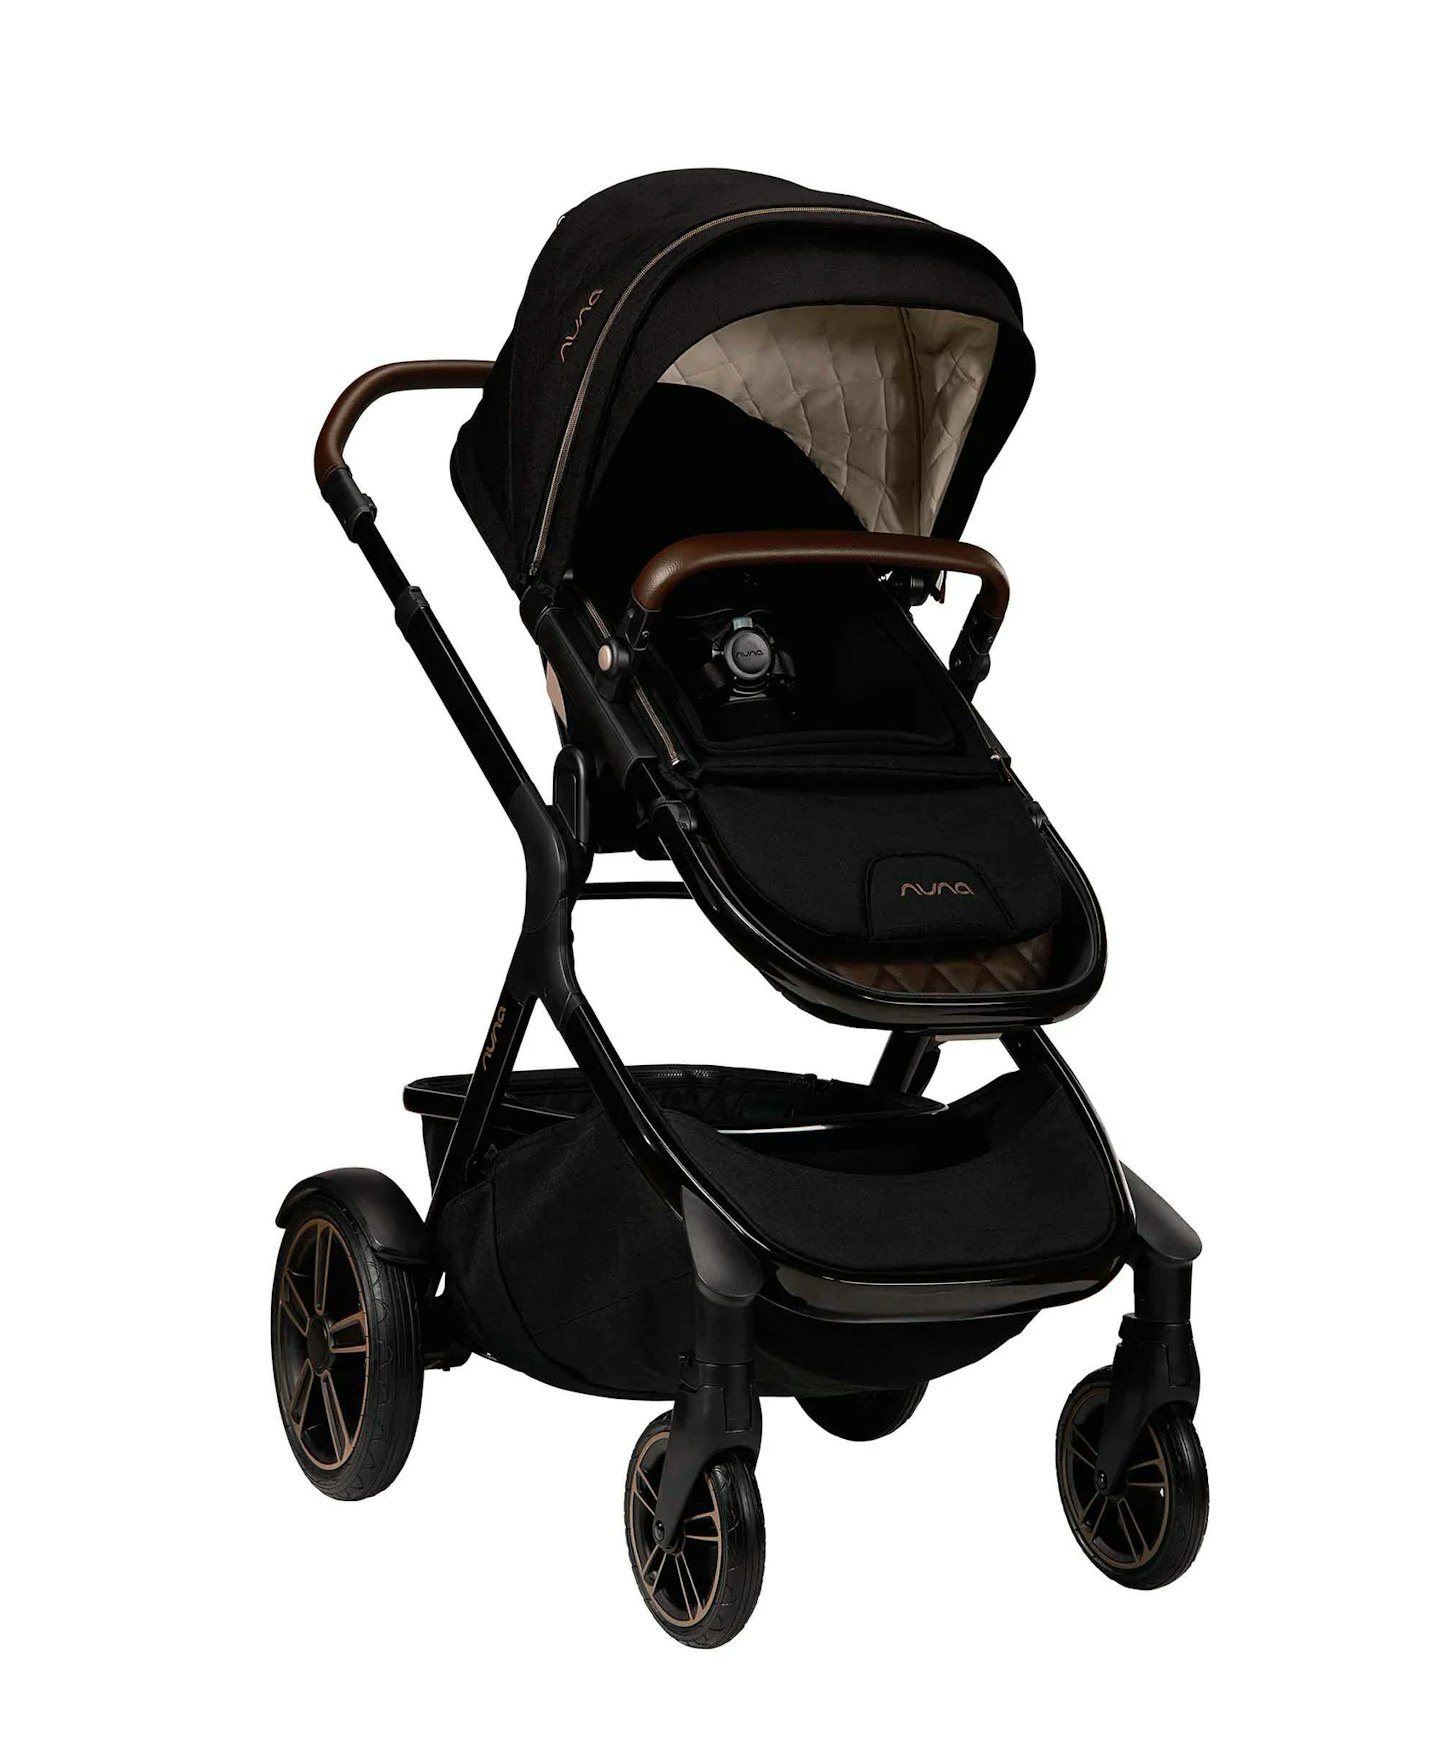 Parent-facing stroller